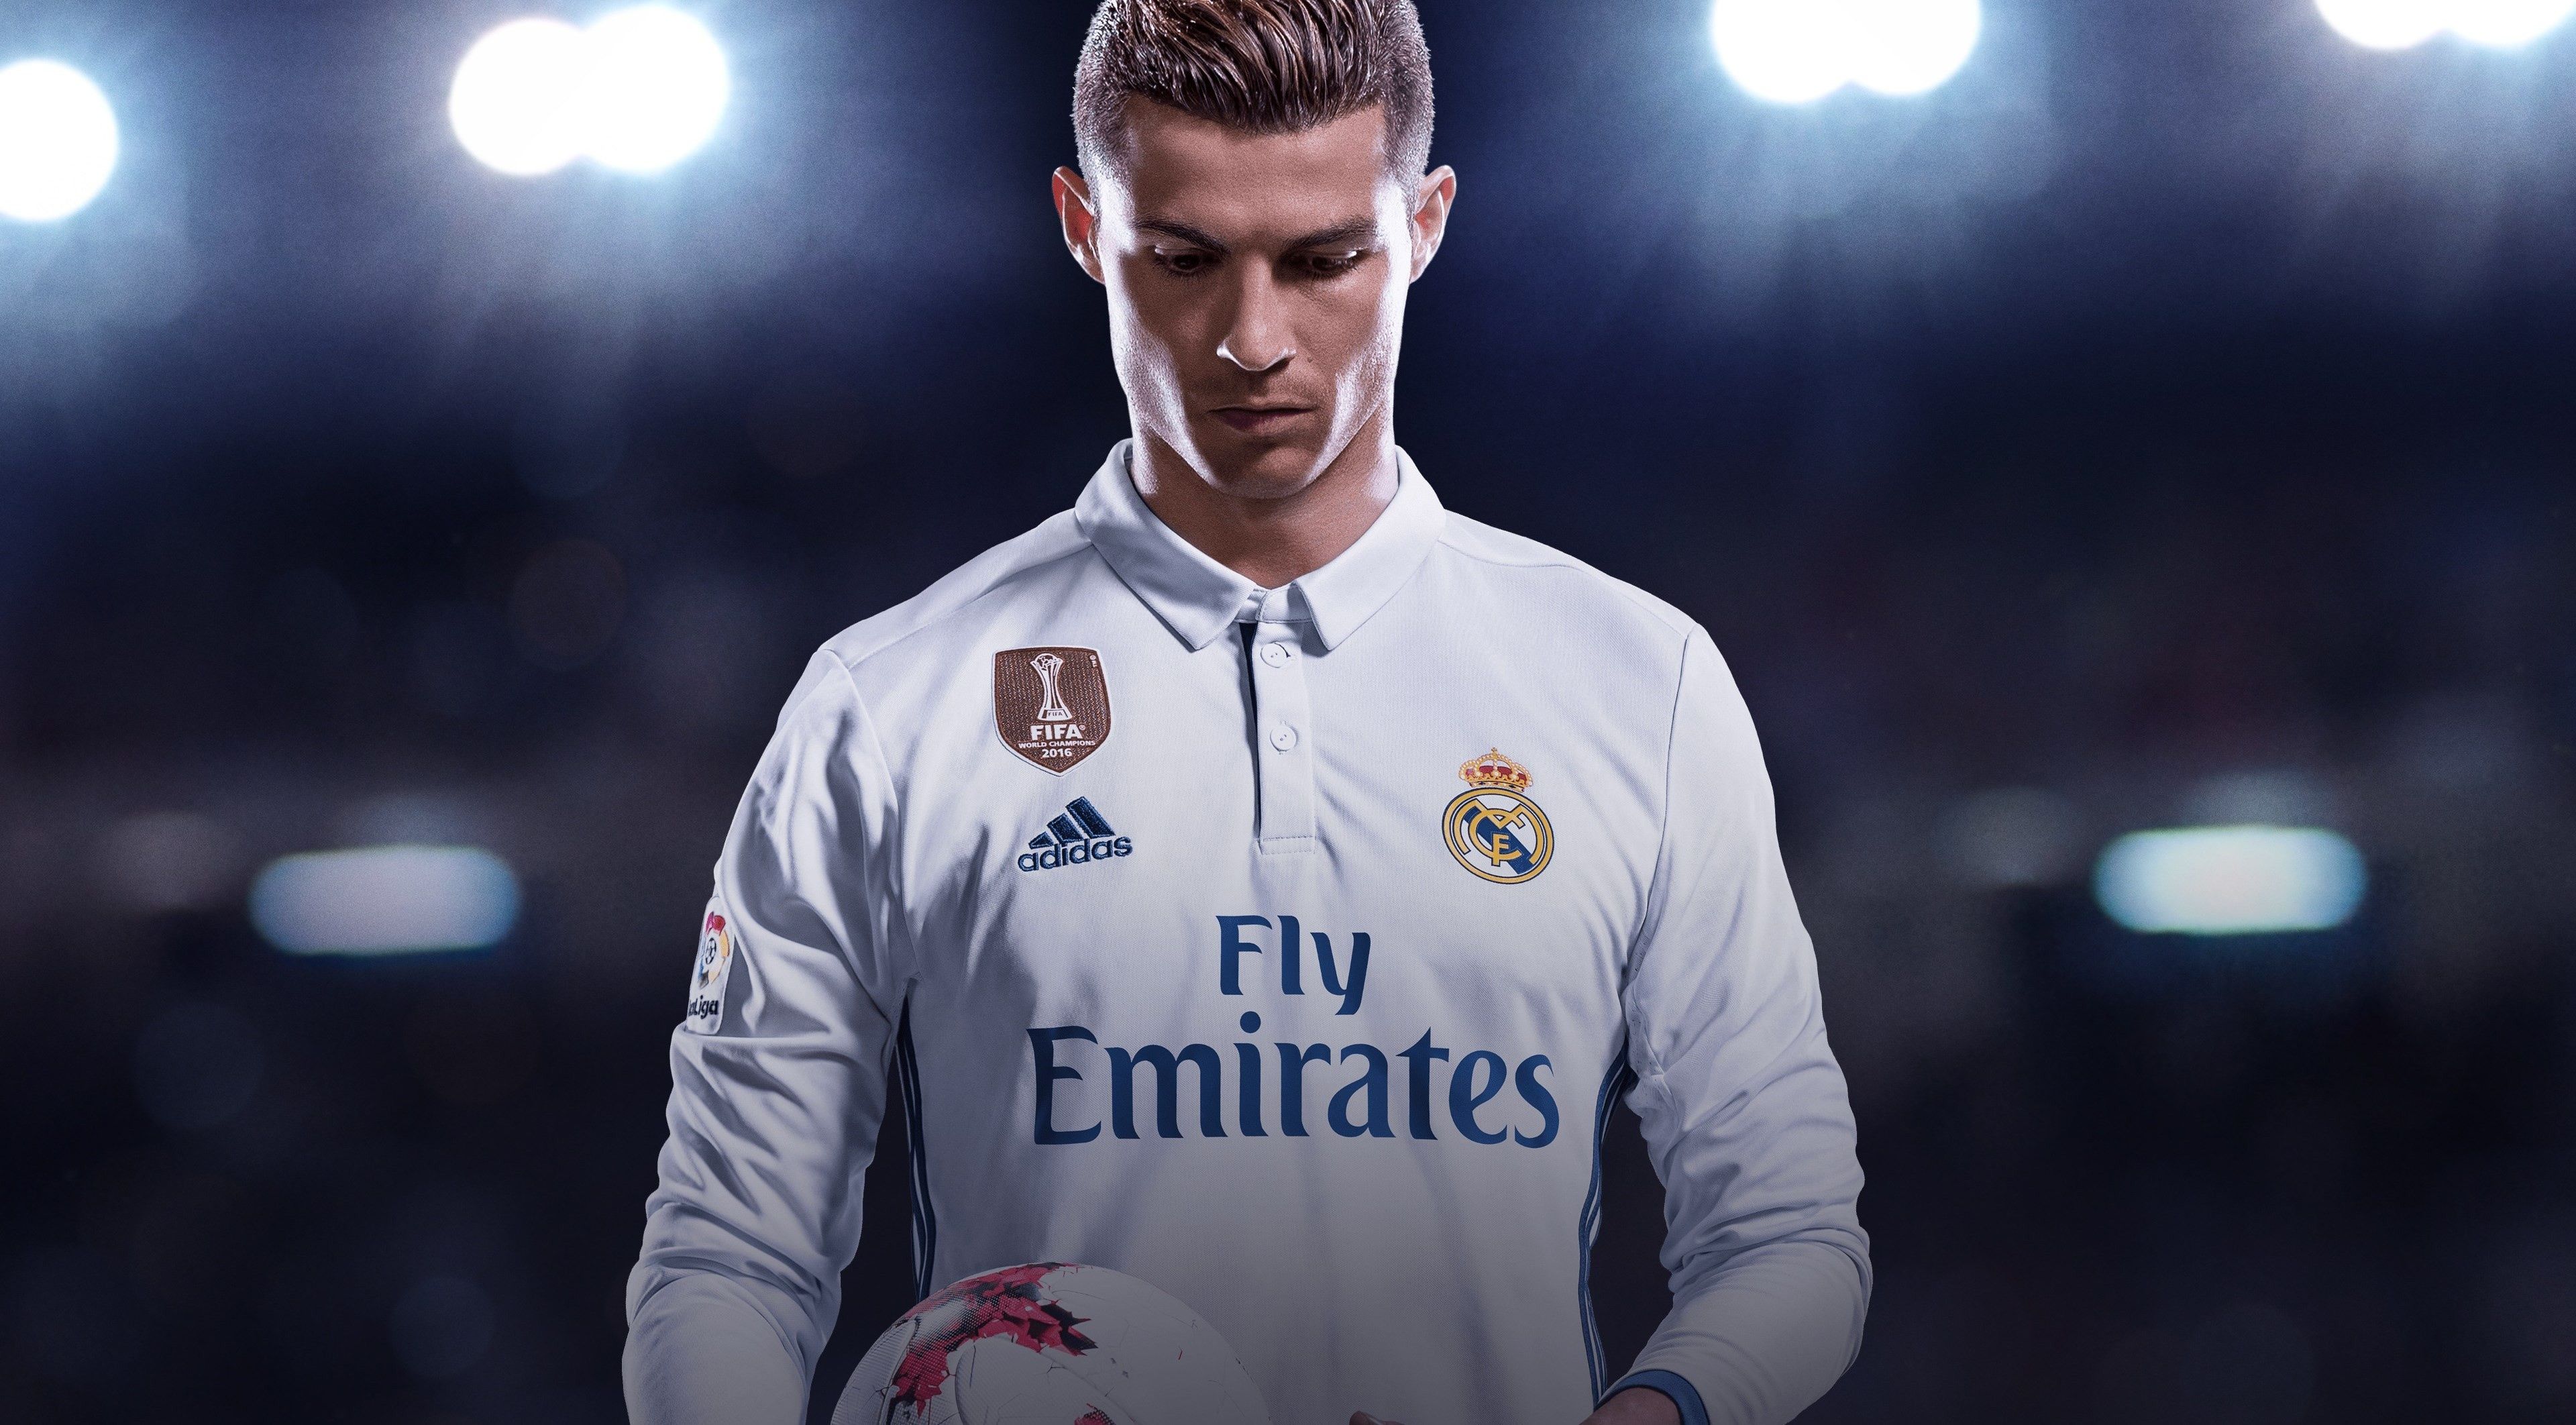 113 fondos de pantalla de Cristiano Ronaldo descargan nuevas imágenes HD de CR7